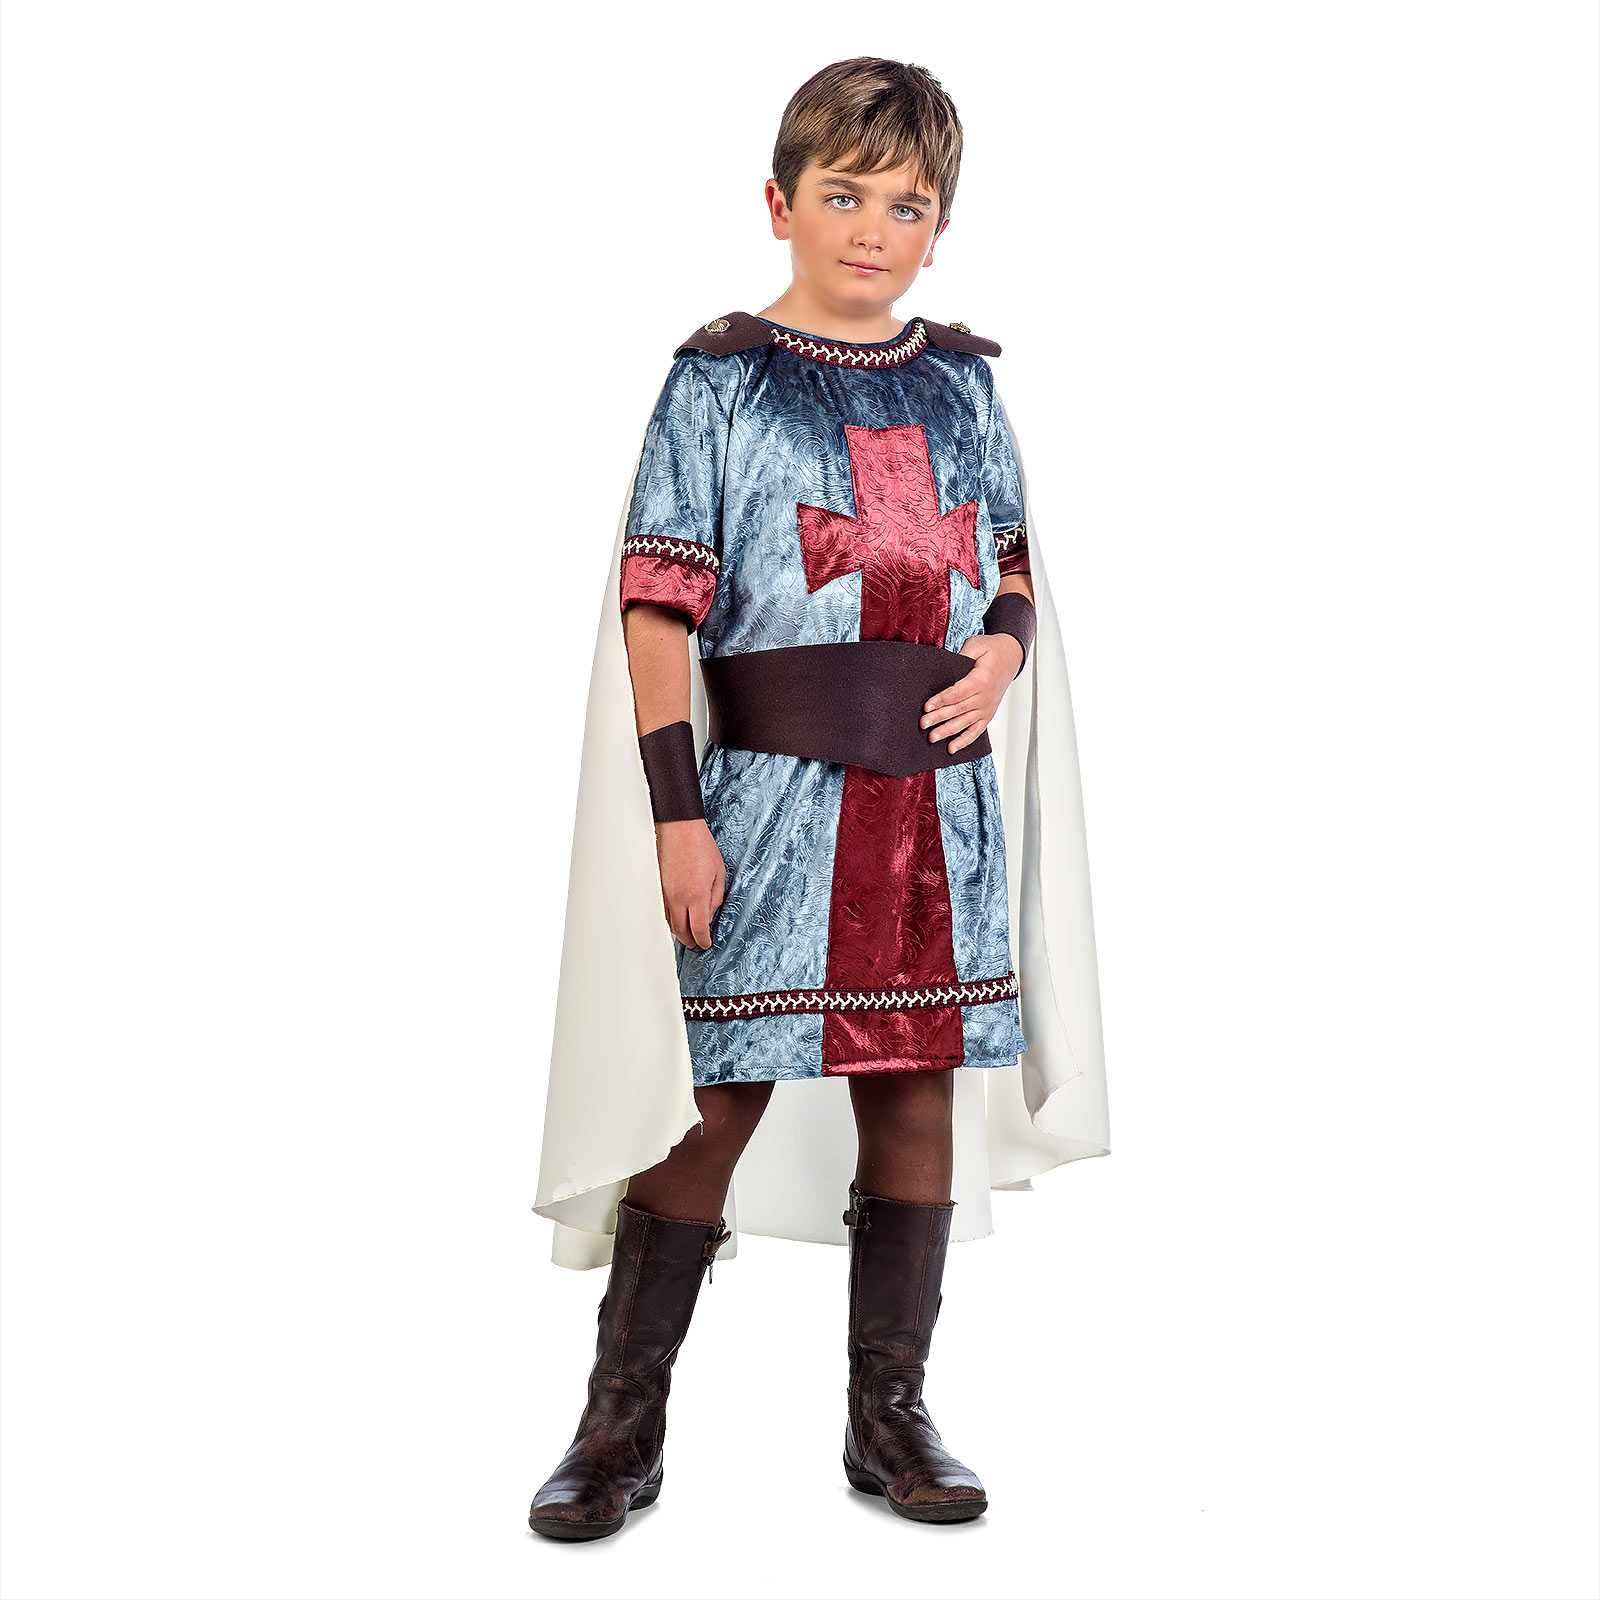 Noble garçon médiéval - Costume d'enfant